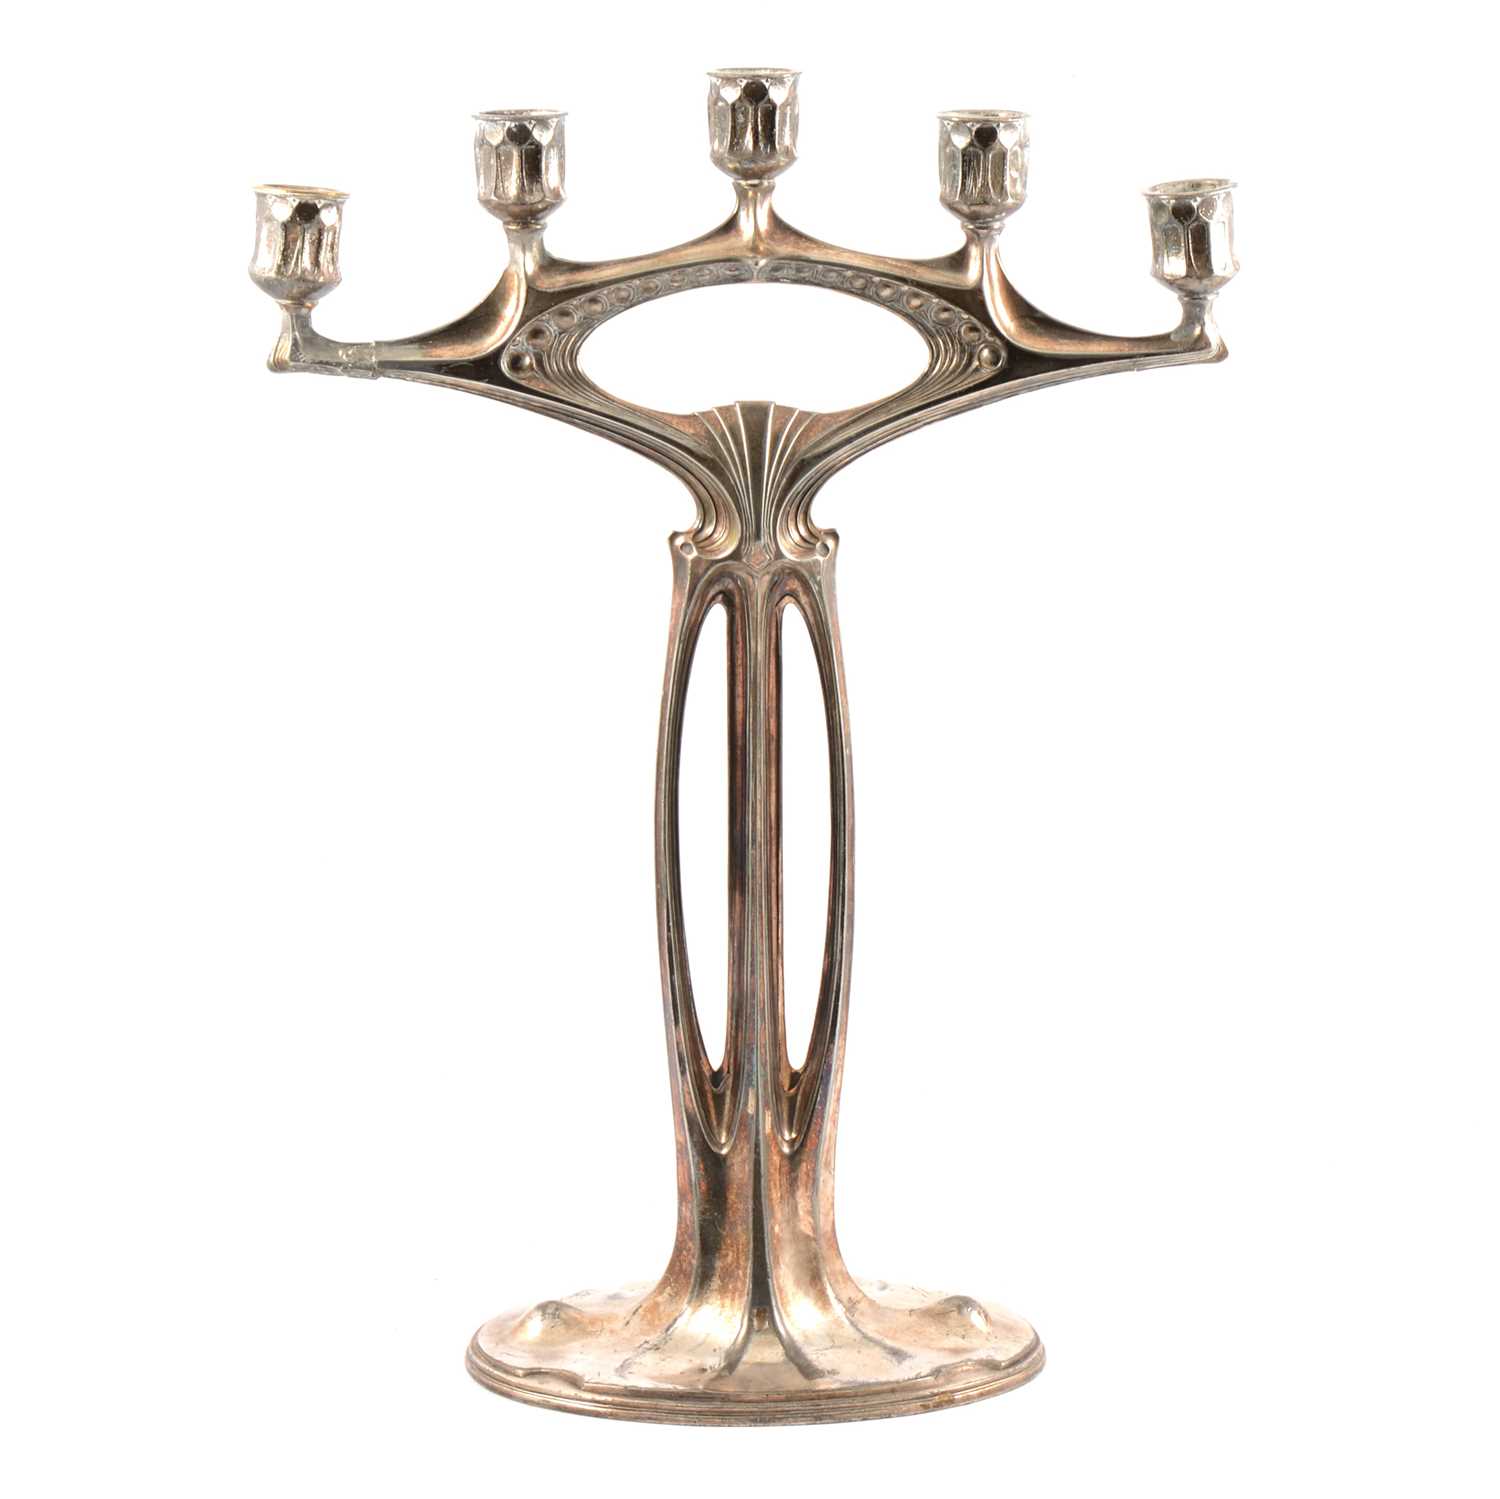 WMF, attributed, a large Jugendstil/ Art Nouveau silvered metal five-light candelabra - Image 2 of 9